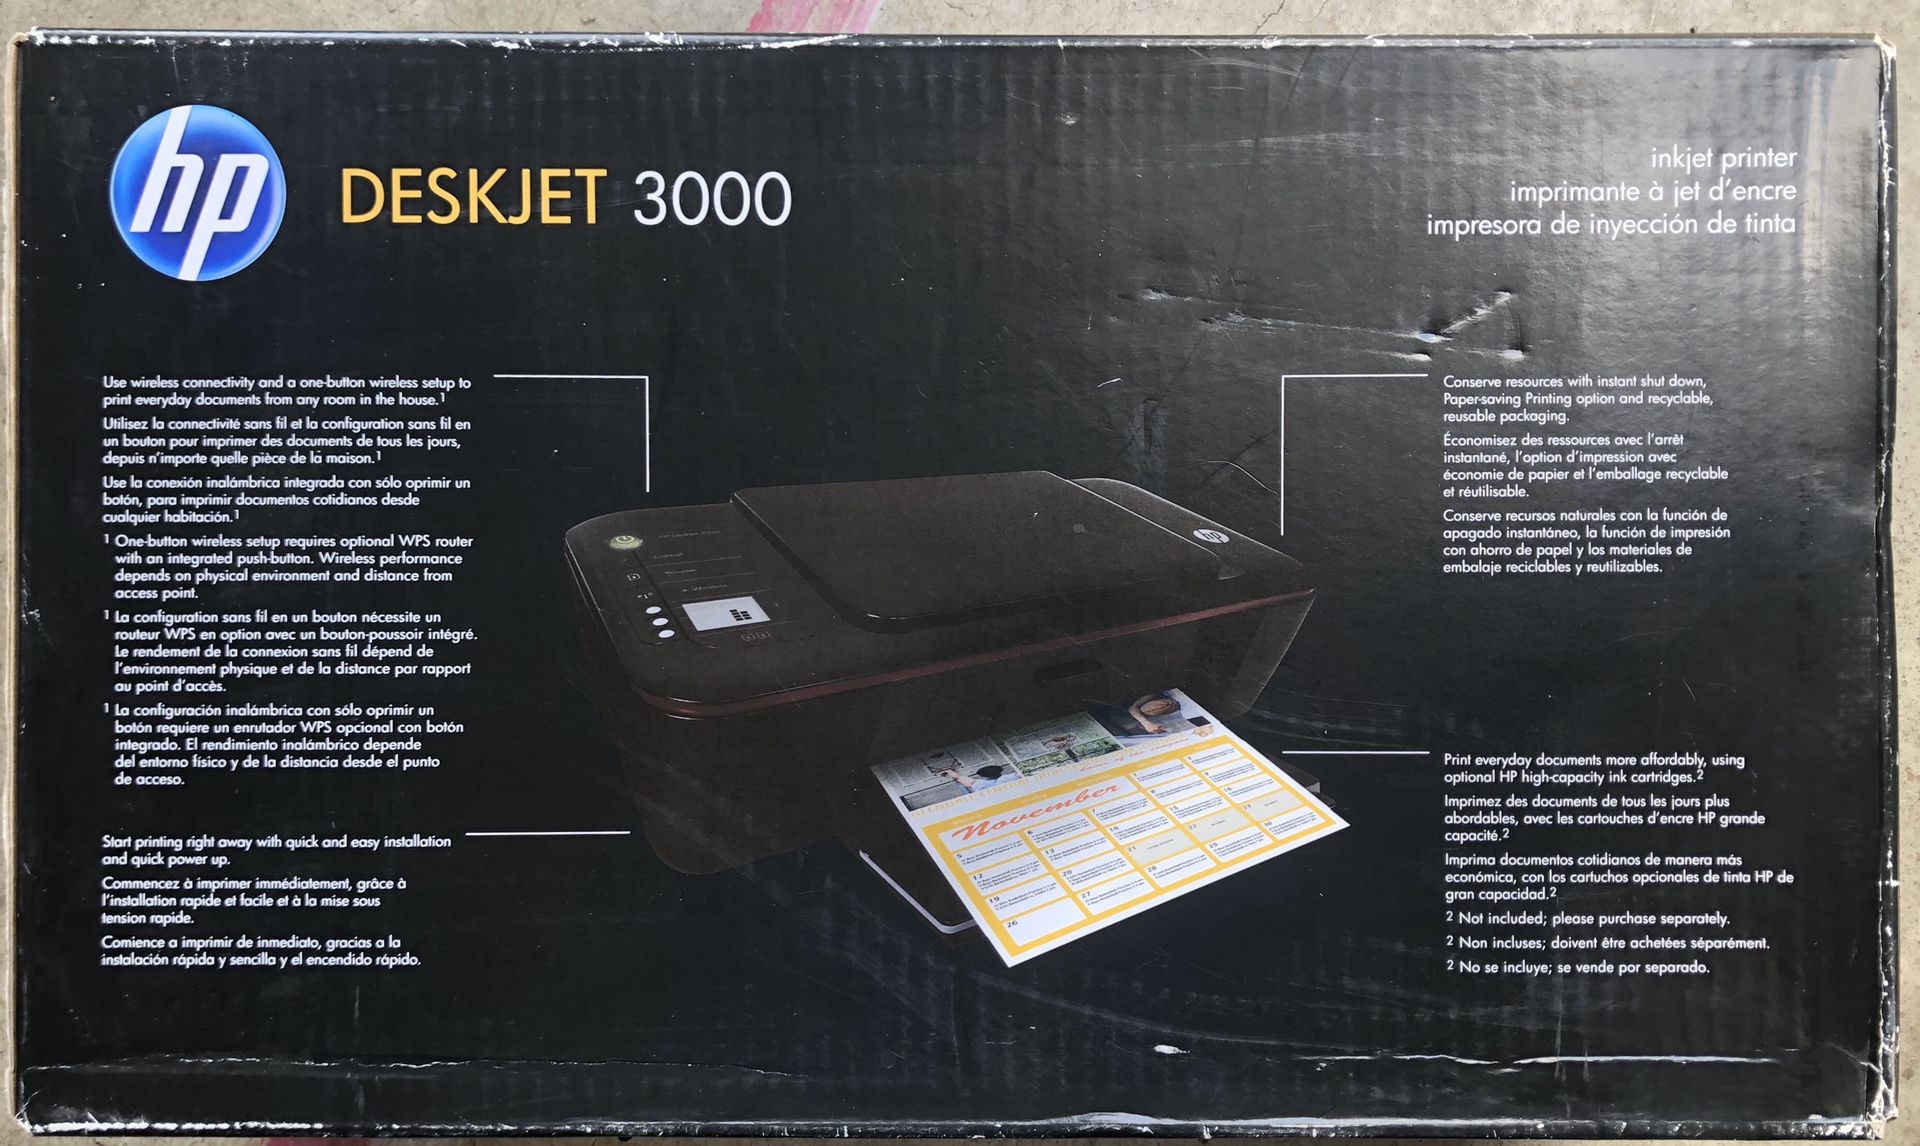 HP Deskjet 3000 printer (brand new) - 100